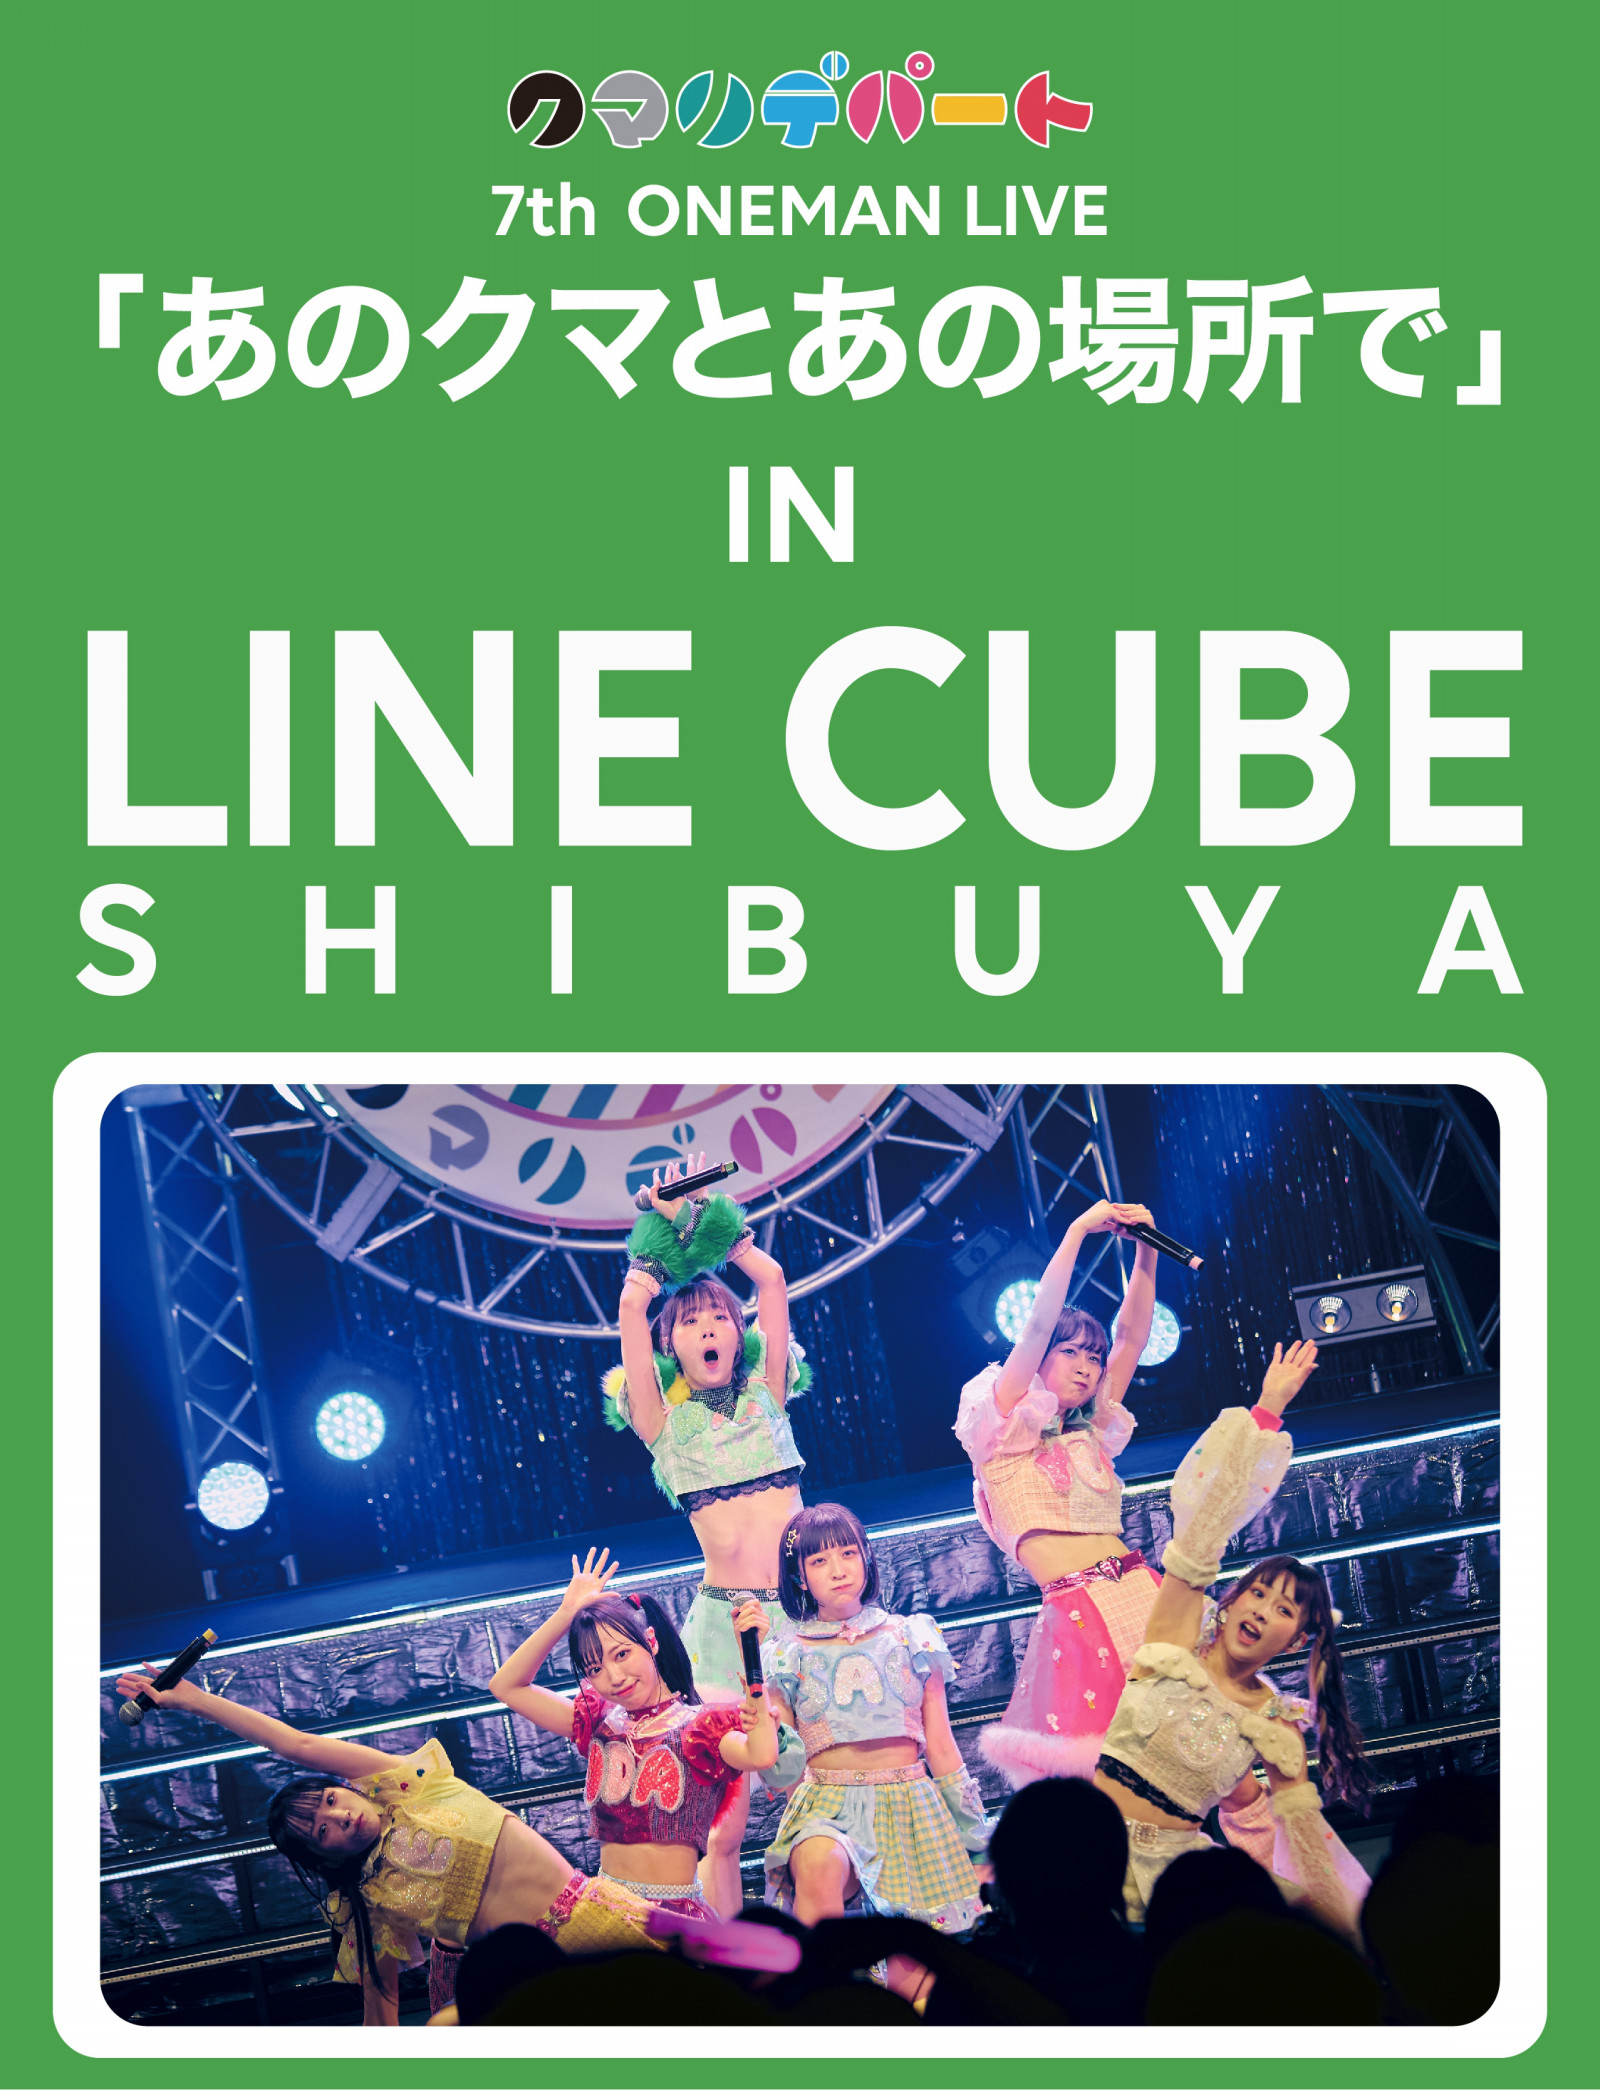 クマリデパート 7th ONEMAN LIVE 「あのクマとあの場所で」 IN LINE CUBE SHIBUYA